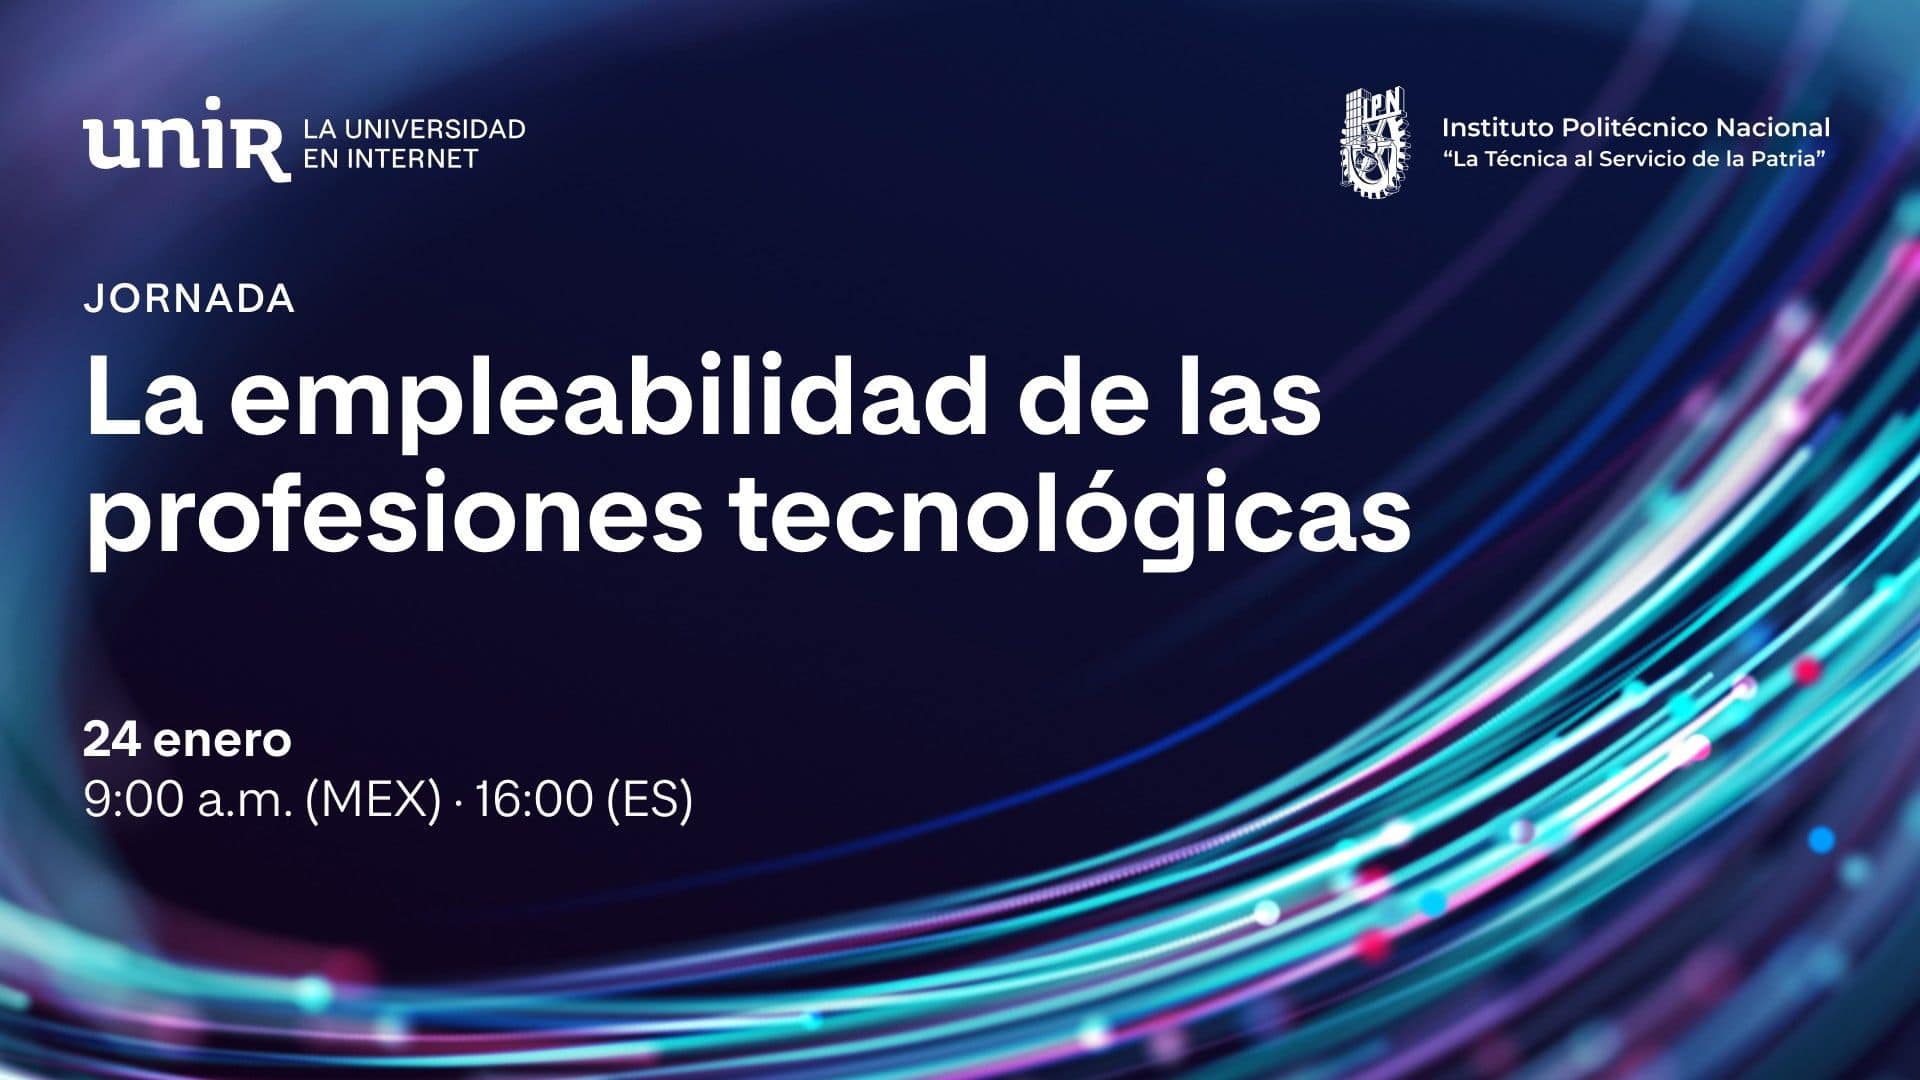 El IPN y UNIR México celebran la Jornada “La empleabilidad de las profesiones tecnológicas” con prestigiosos expertos internacionales